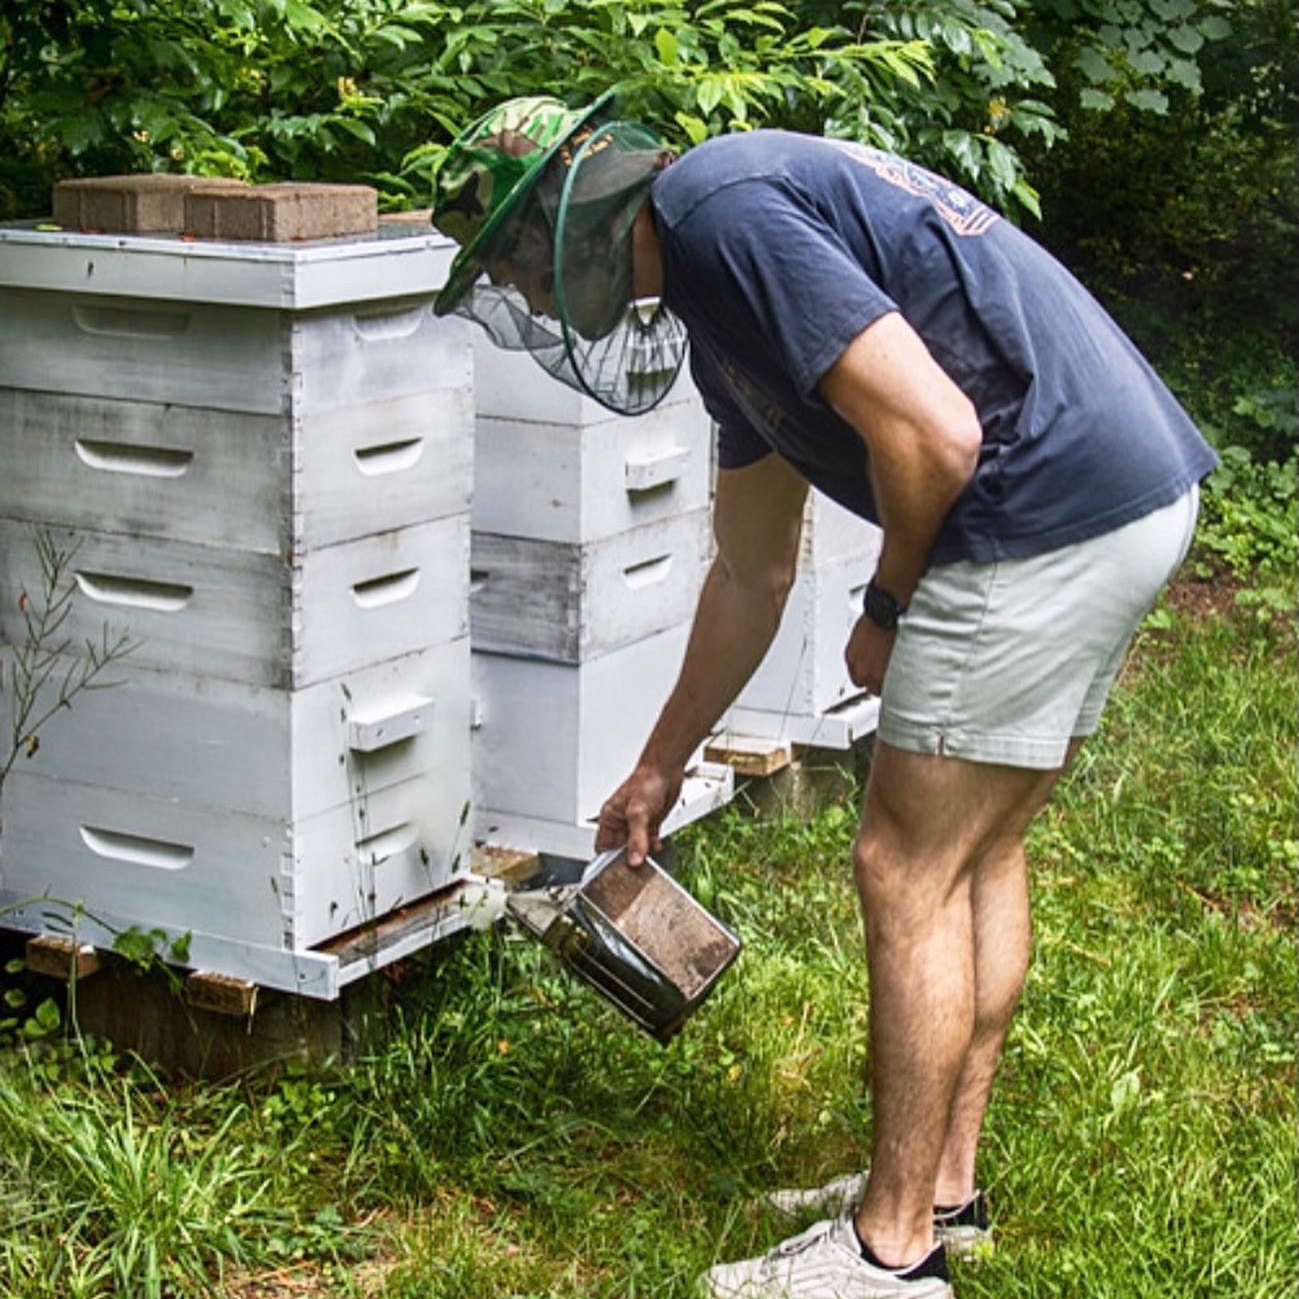 JGS Beekeeping